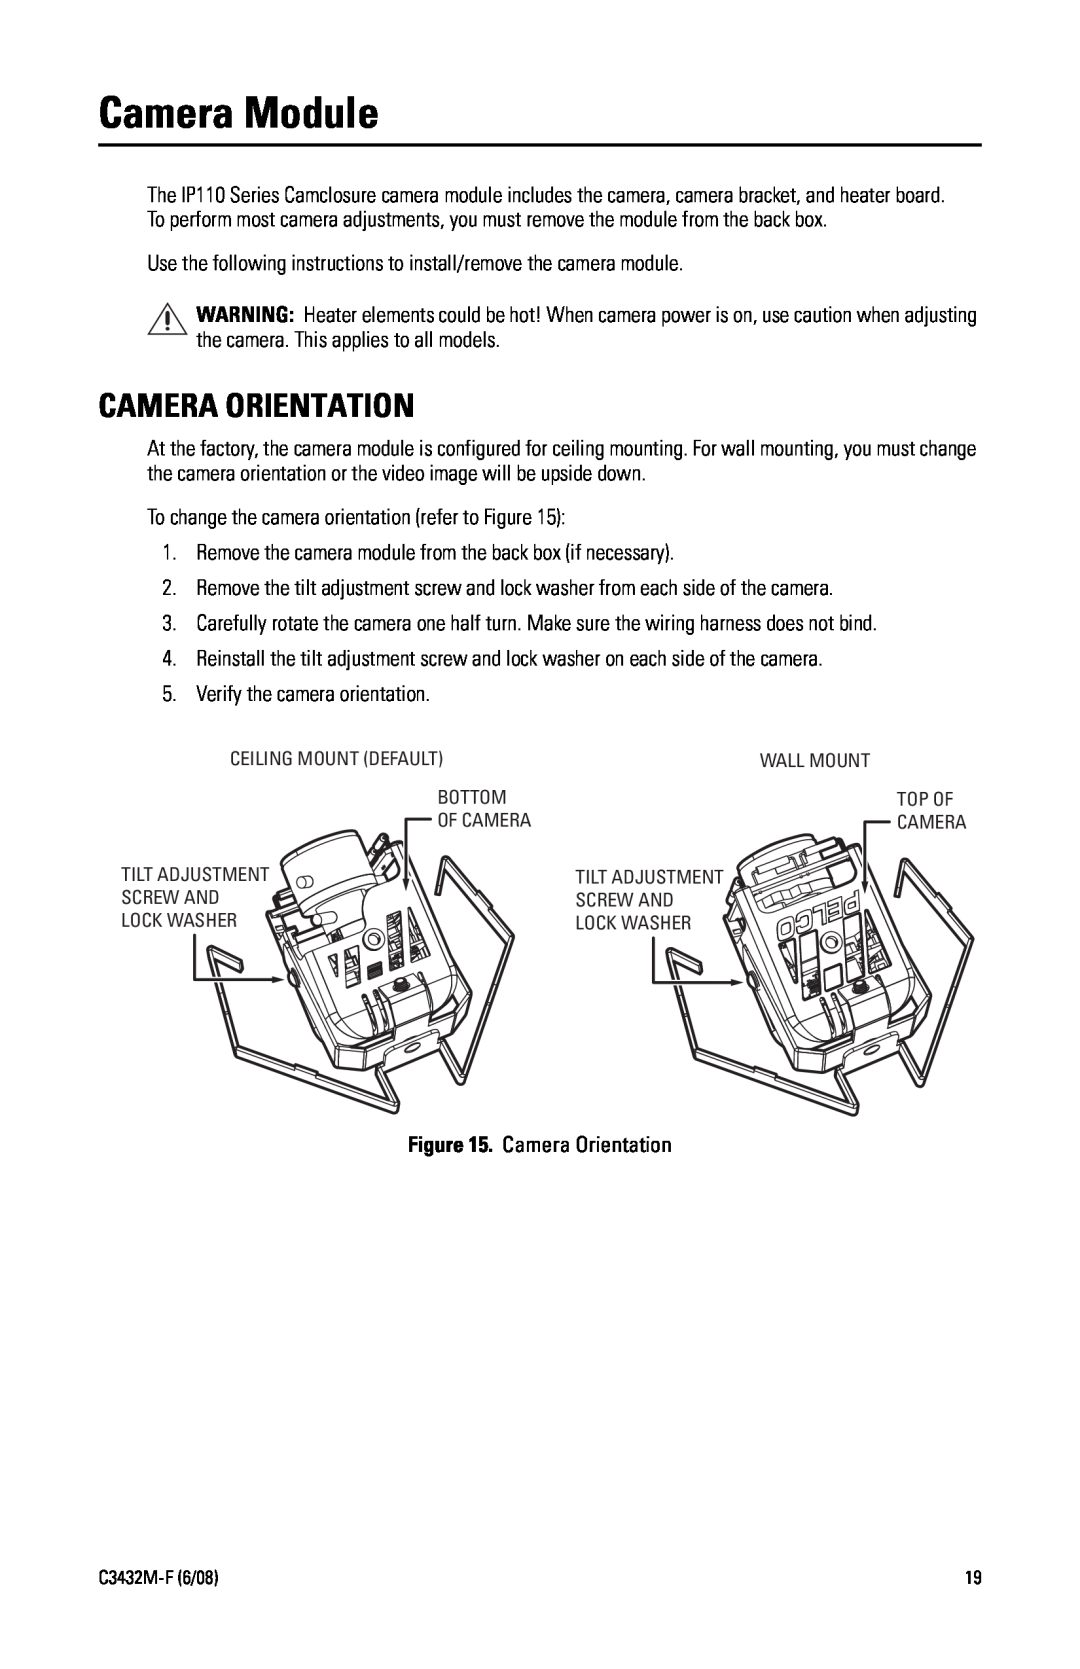 Pelco C3432M-F manual Camera Module, Camera Orientation 